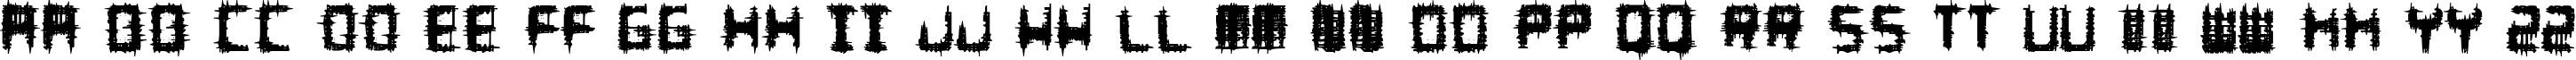 Пример написания английского алфавита шрифтом Melee Regular